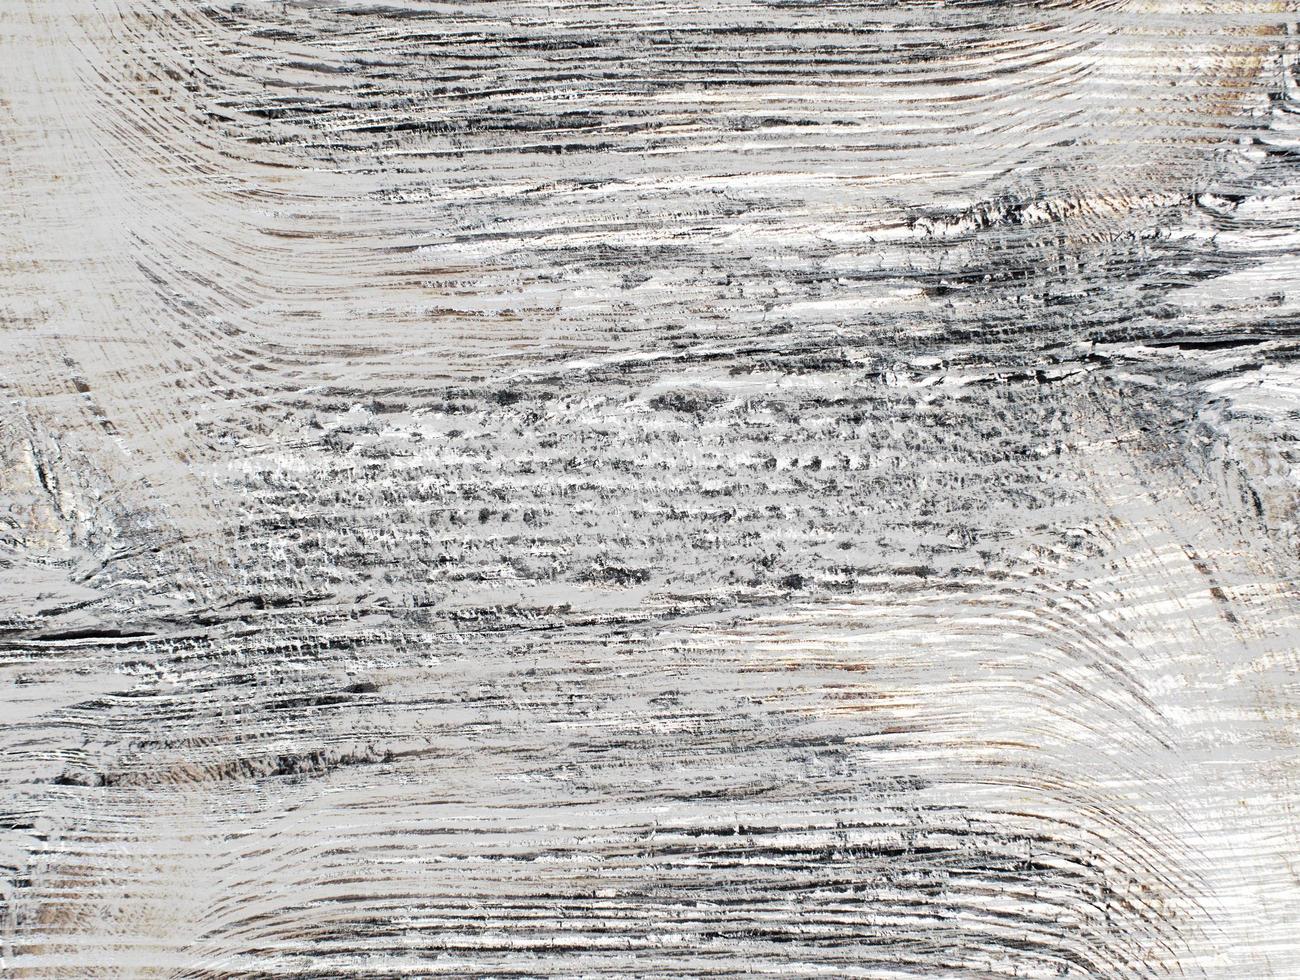 texture de grain de bois photo